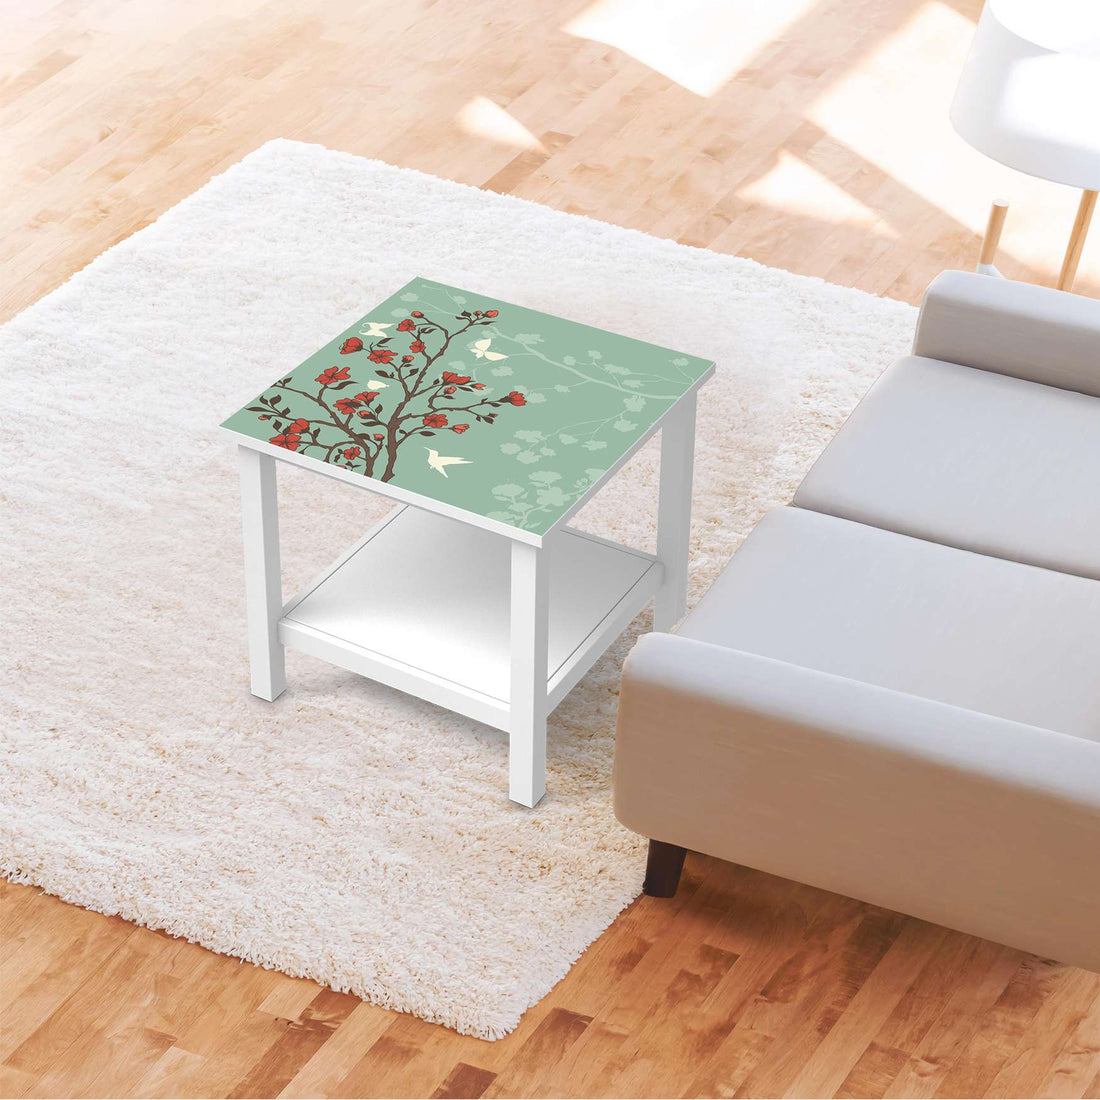 Möbel Klebefolie Blütenzauber - IKEA Hemnes Beistelltisch 55x55 cm - Wohnzimmer